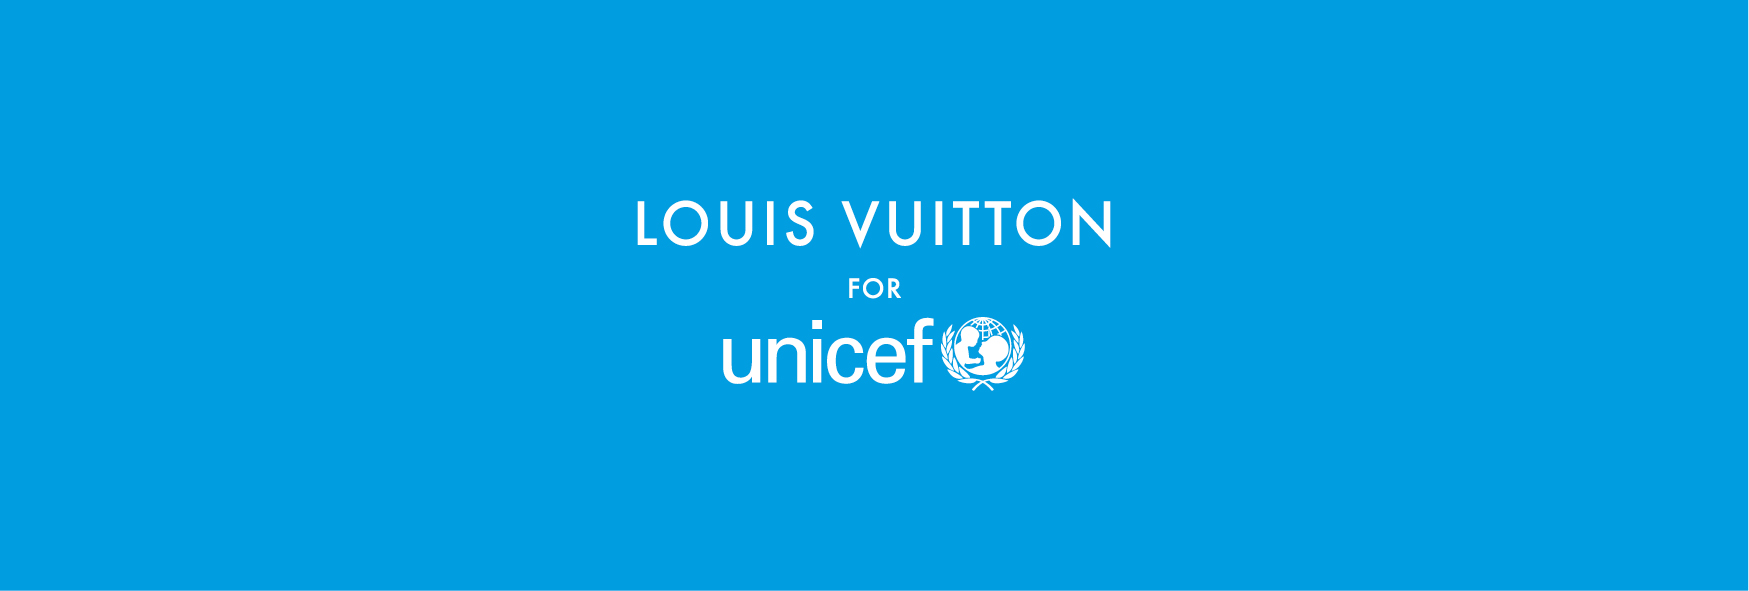 Louis Vuitton muestra su lado más solidario junto a Unicef con su